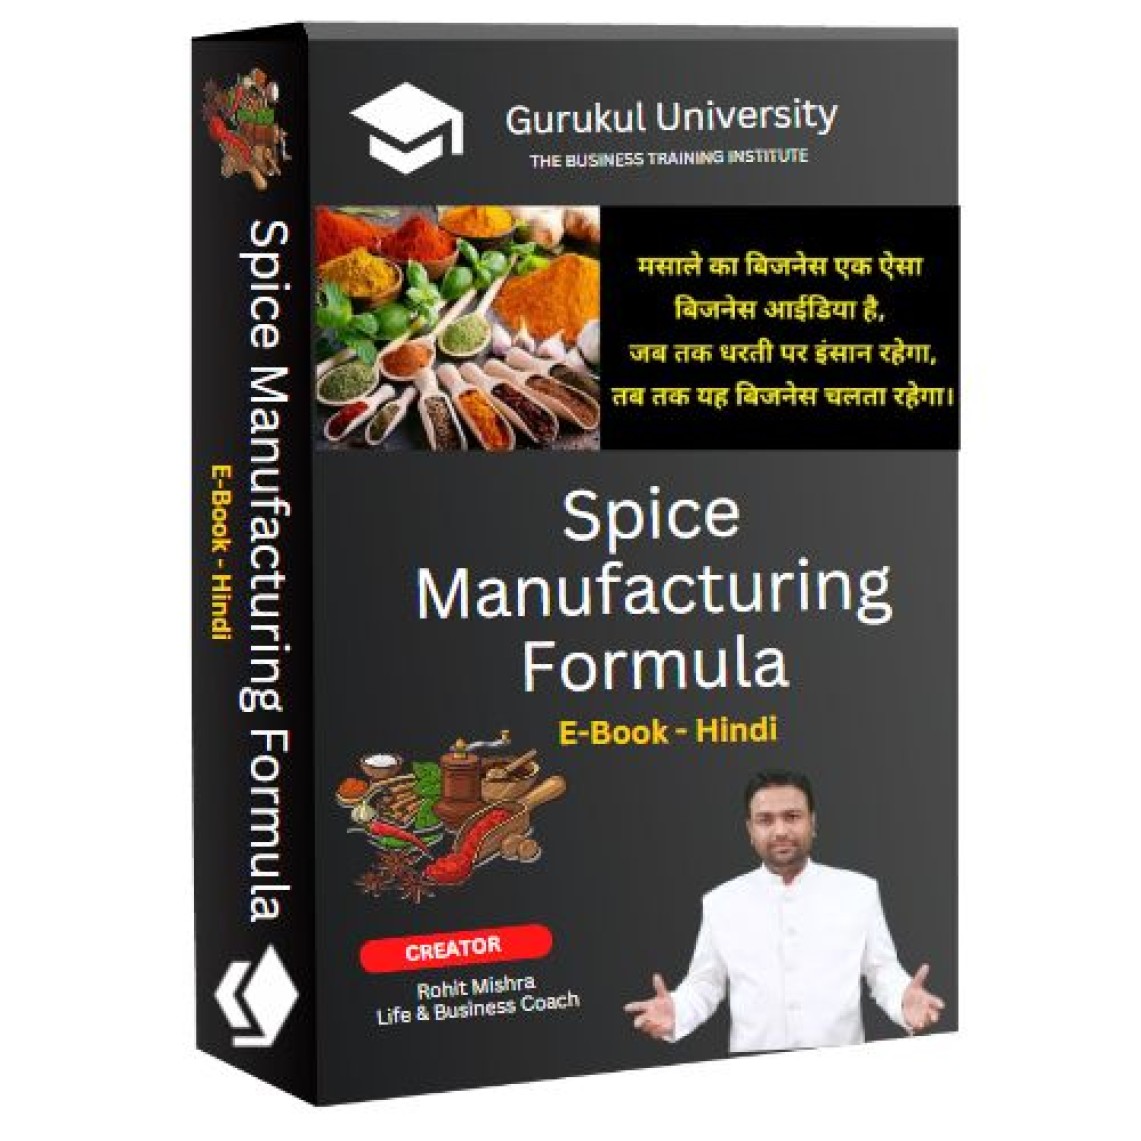 Spice Manufacturing Formula E-Book